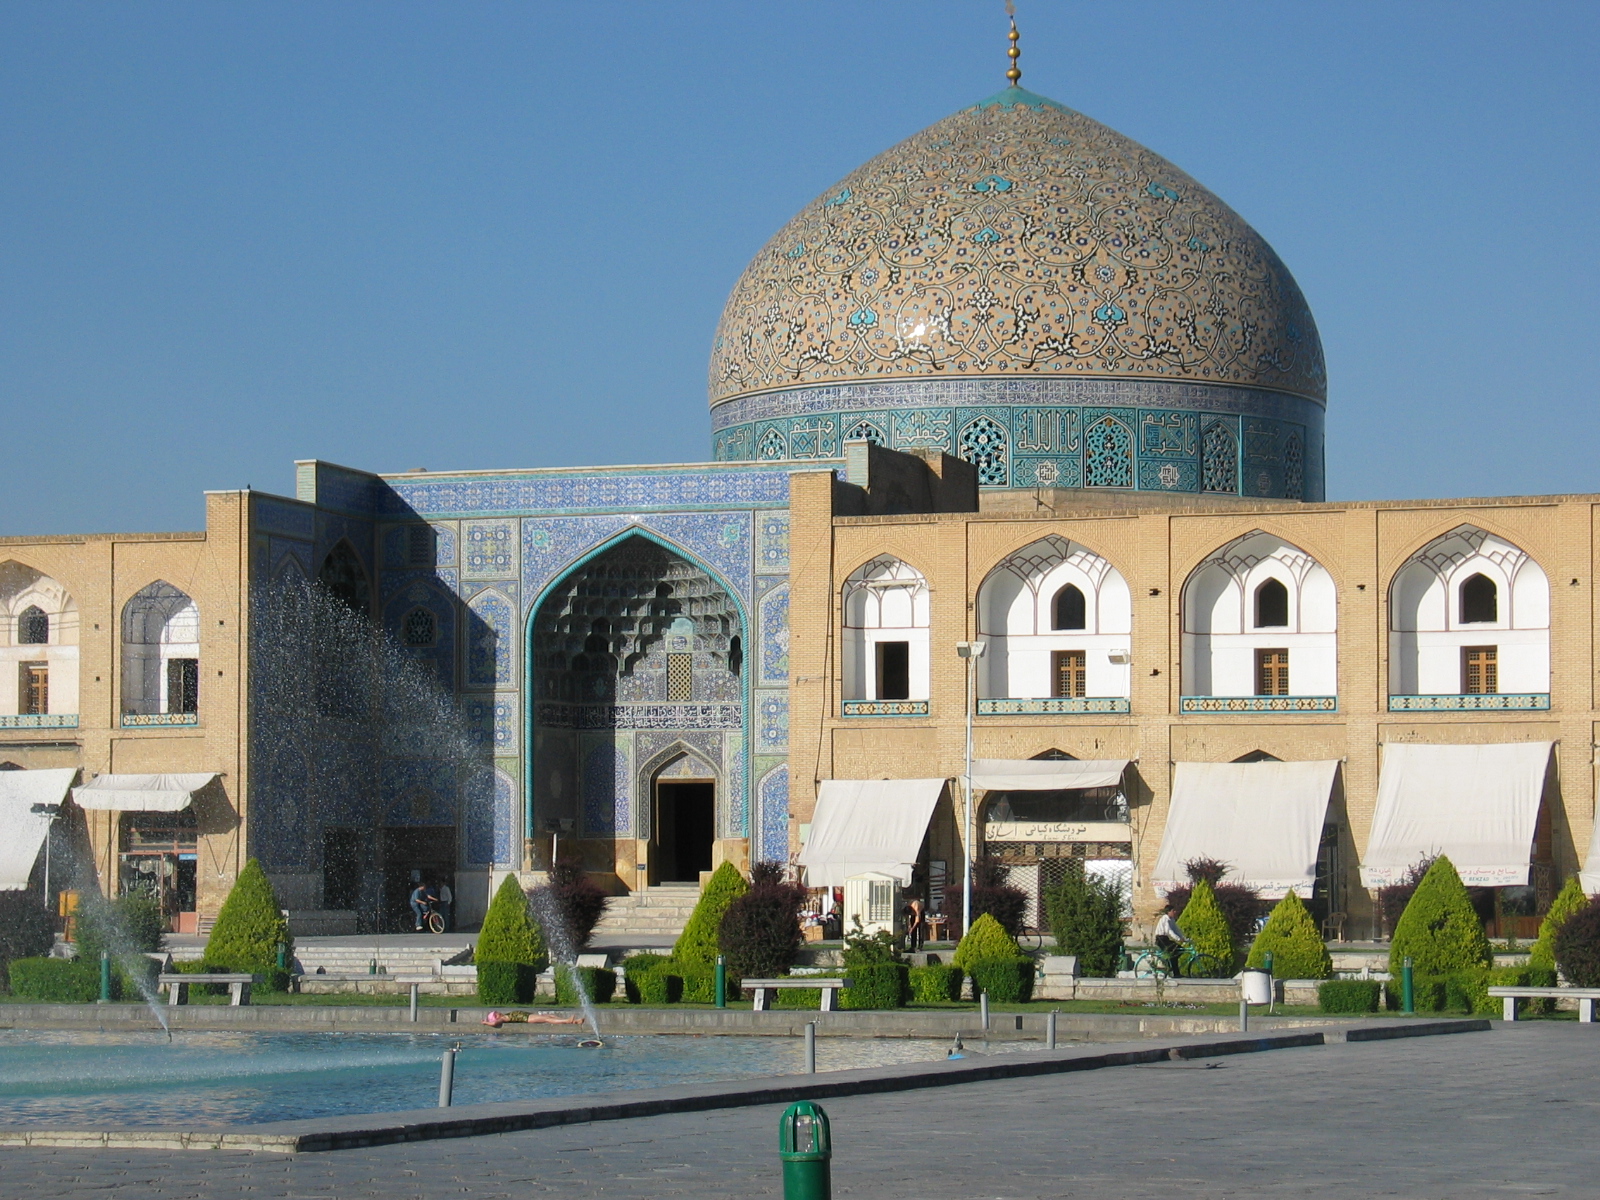 Sheik Lotfollah Mosque, Iran